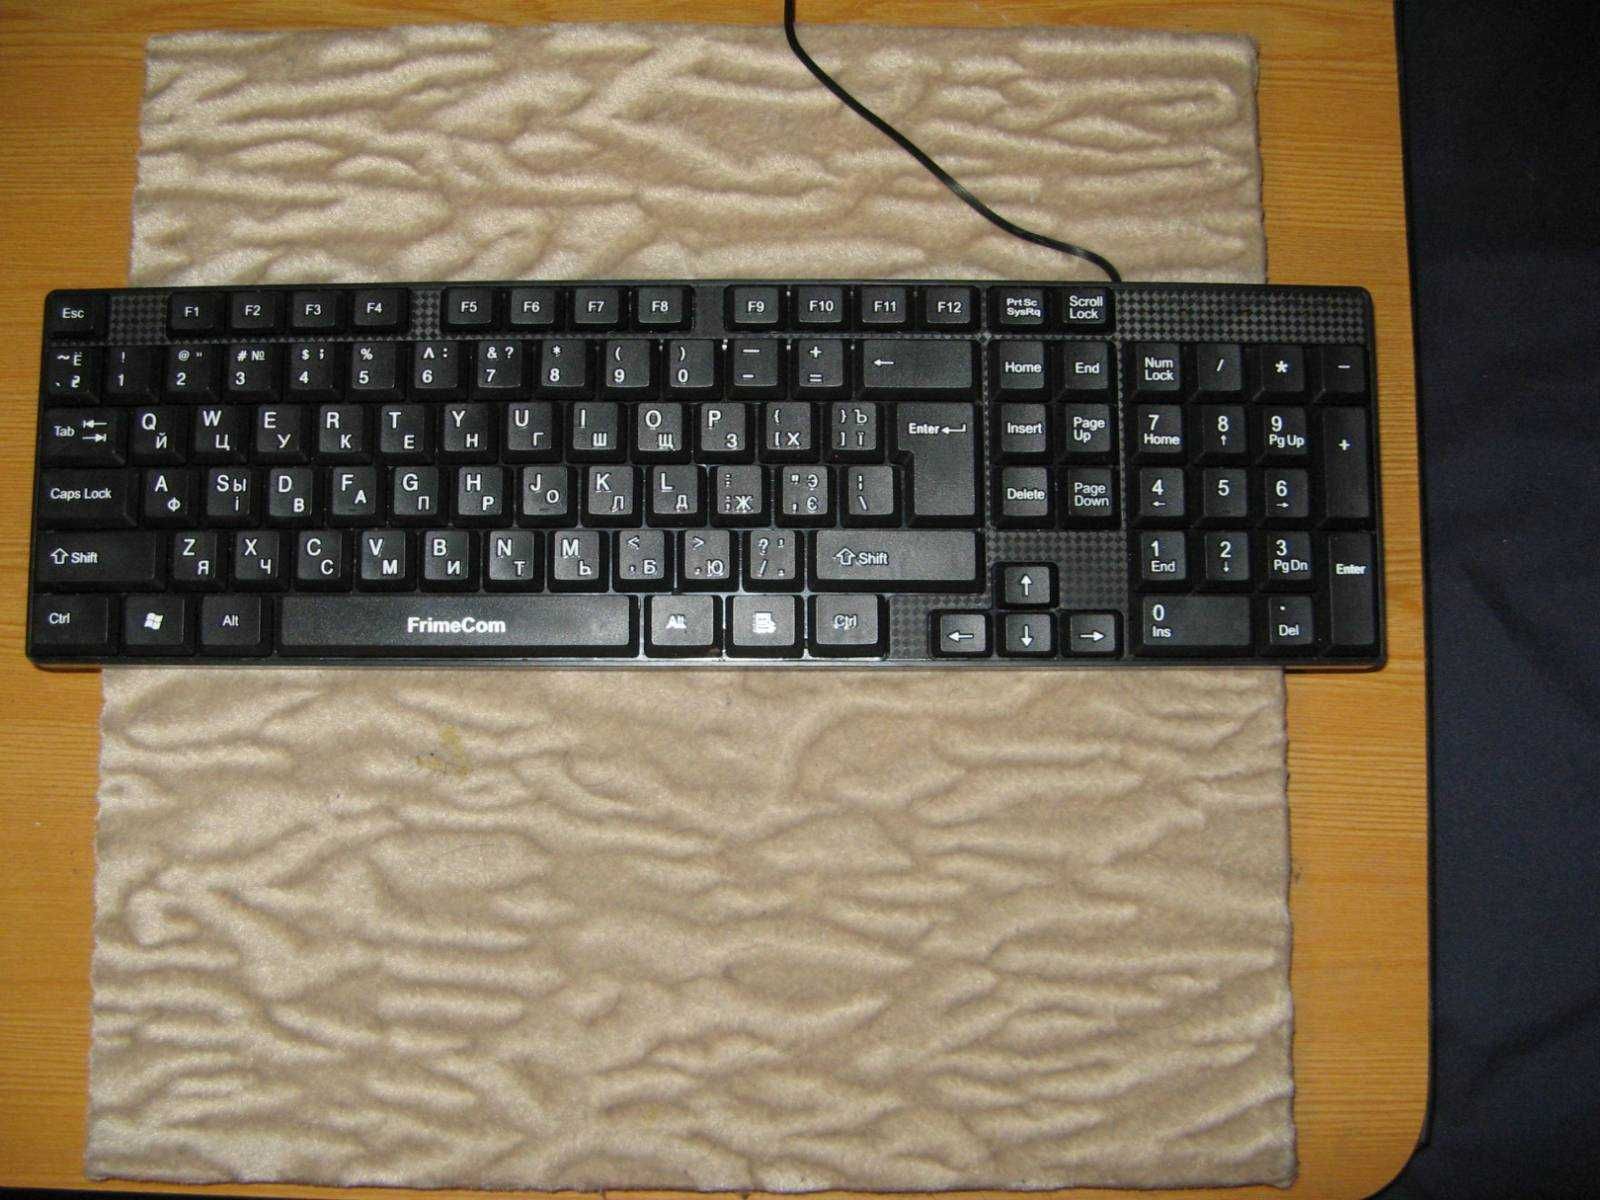 Клавиатура для компьютера  Frimecom FC-501 Usb  в отличном состоянии